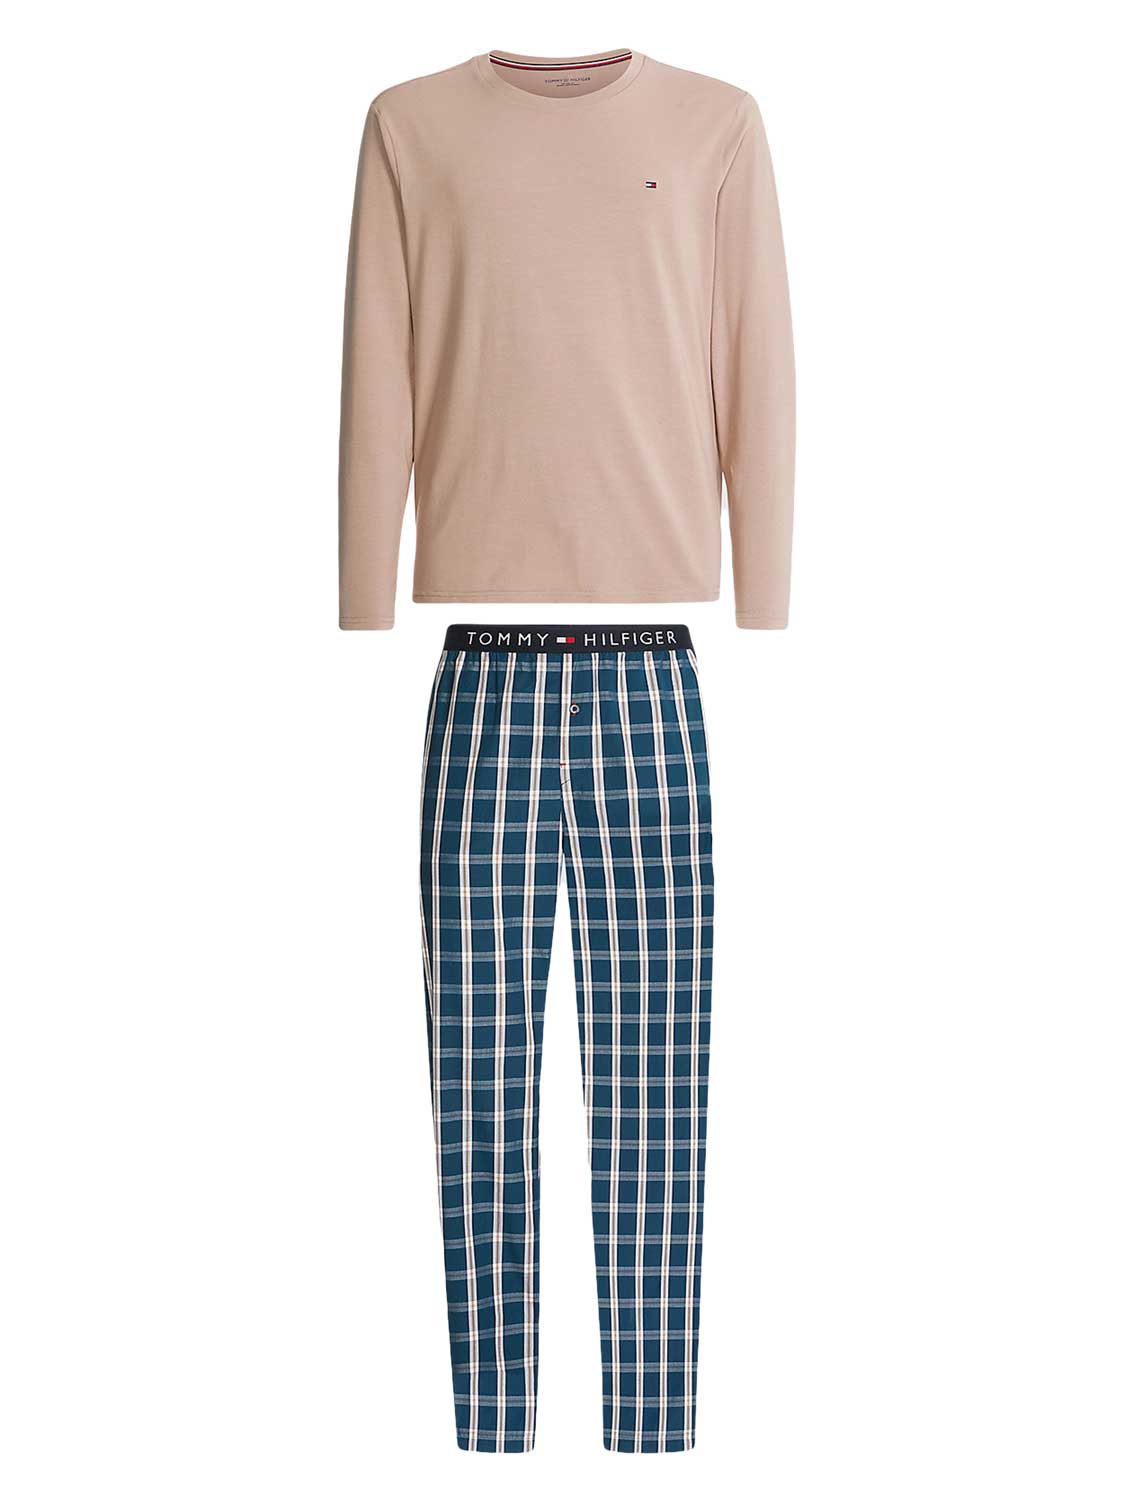 Tommy Hilfiger Pyjama lange broek 'Blue'/'Brown' Katoen M